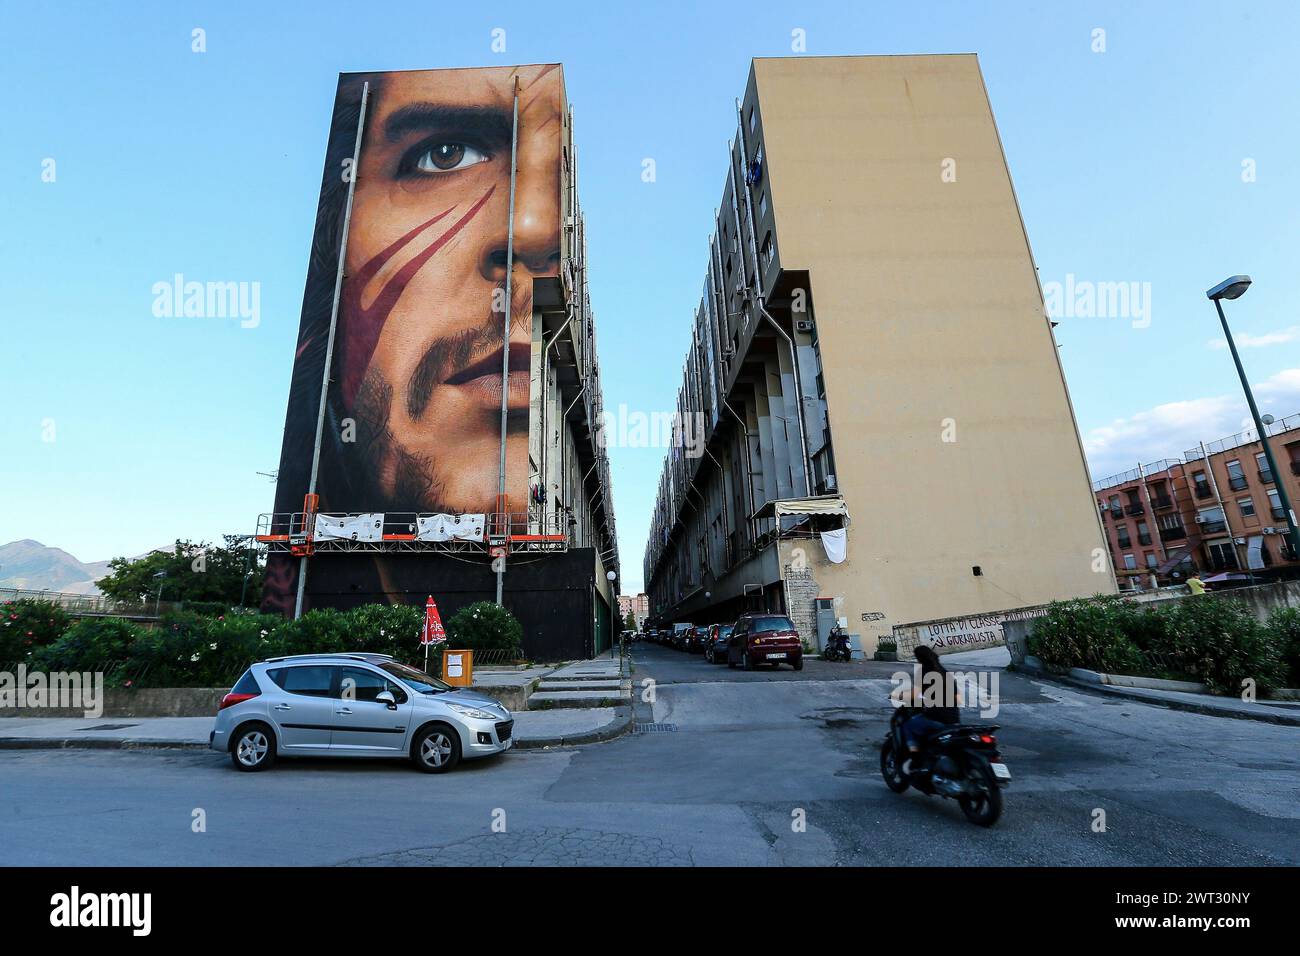 Una veduta dei murales giganti, raffiguranti il rivoluzionario che Guevara, dell'artista Jorit Agoch, su un edificio del San Giovanni a Teduccio, un distr Foto Stock